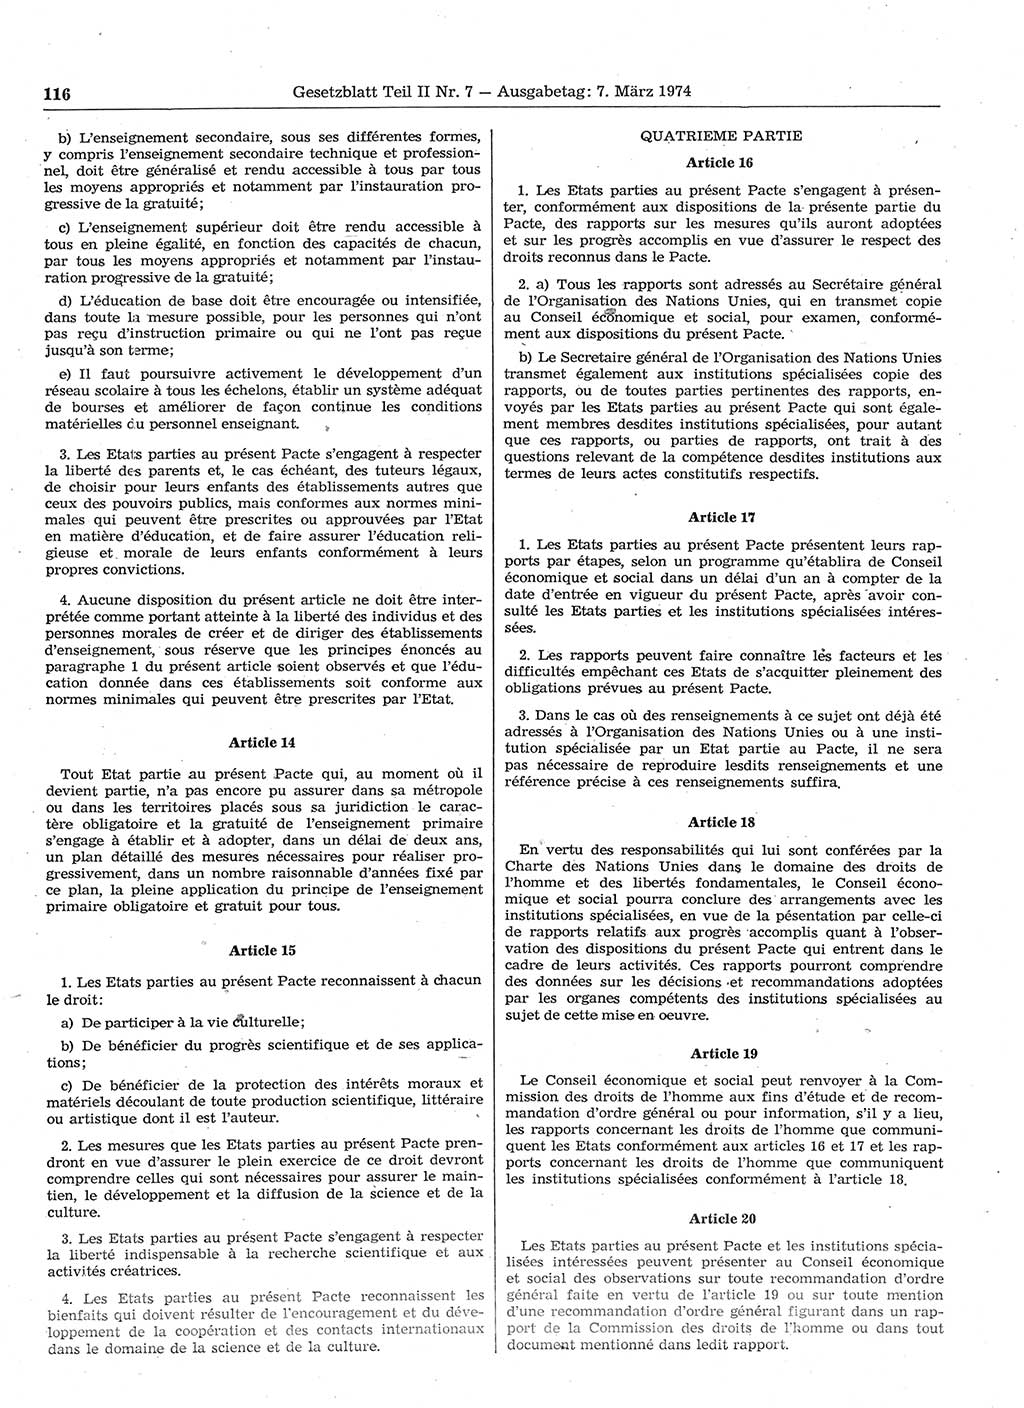 Gesetzblatt (GBl.) der Deutschen Demokratischen Republik (DDR) Teil ⅠⅠ 1974, Seite 116 (GBl. DDR ⅠⅠ 1974, S. 116)